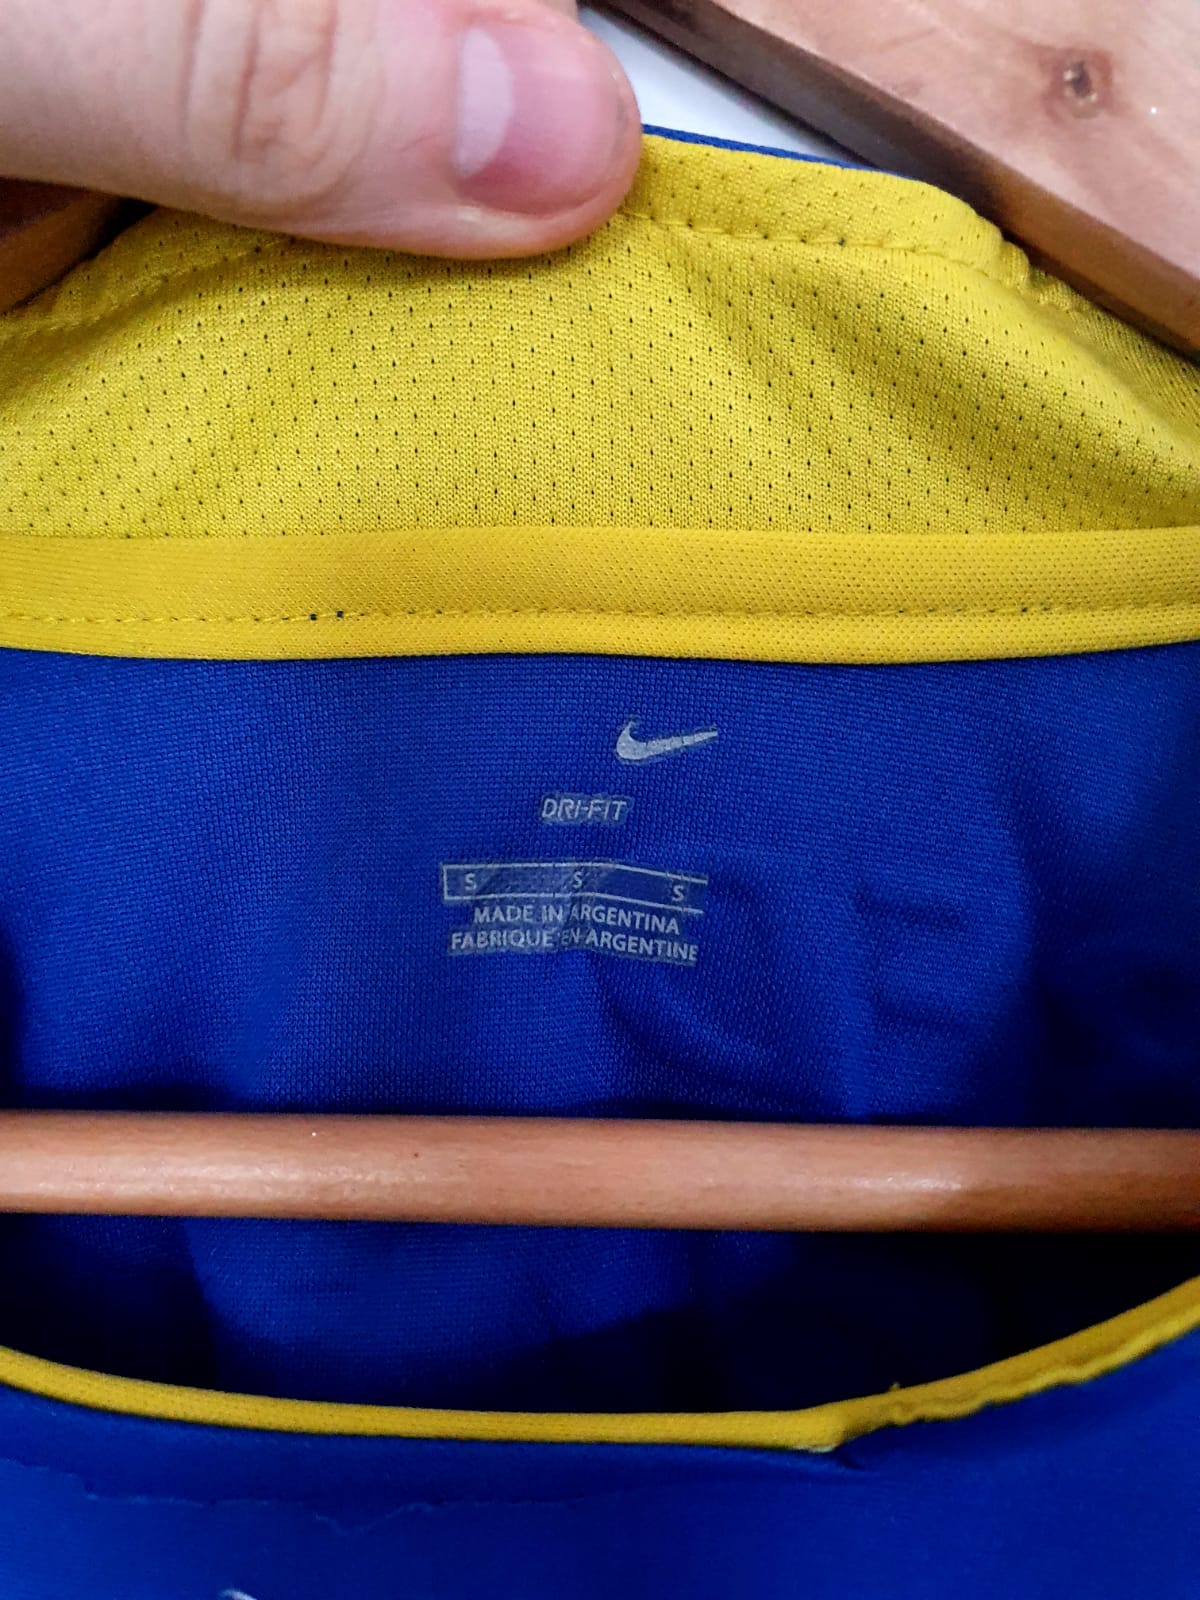 Nike Boca Juniors Home Shirt 2005/2006 'Insua 10' Small